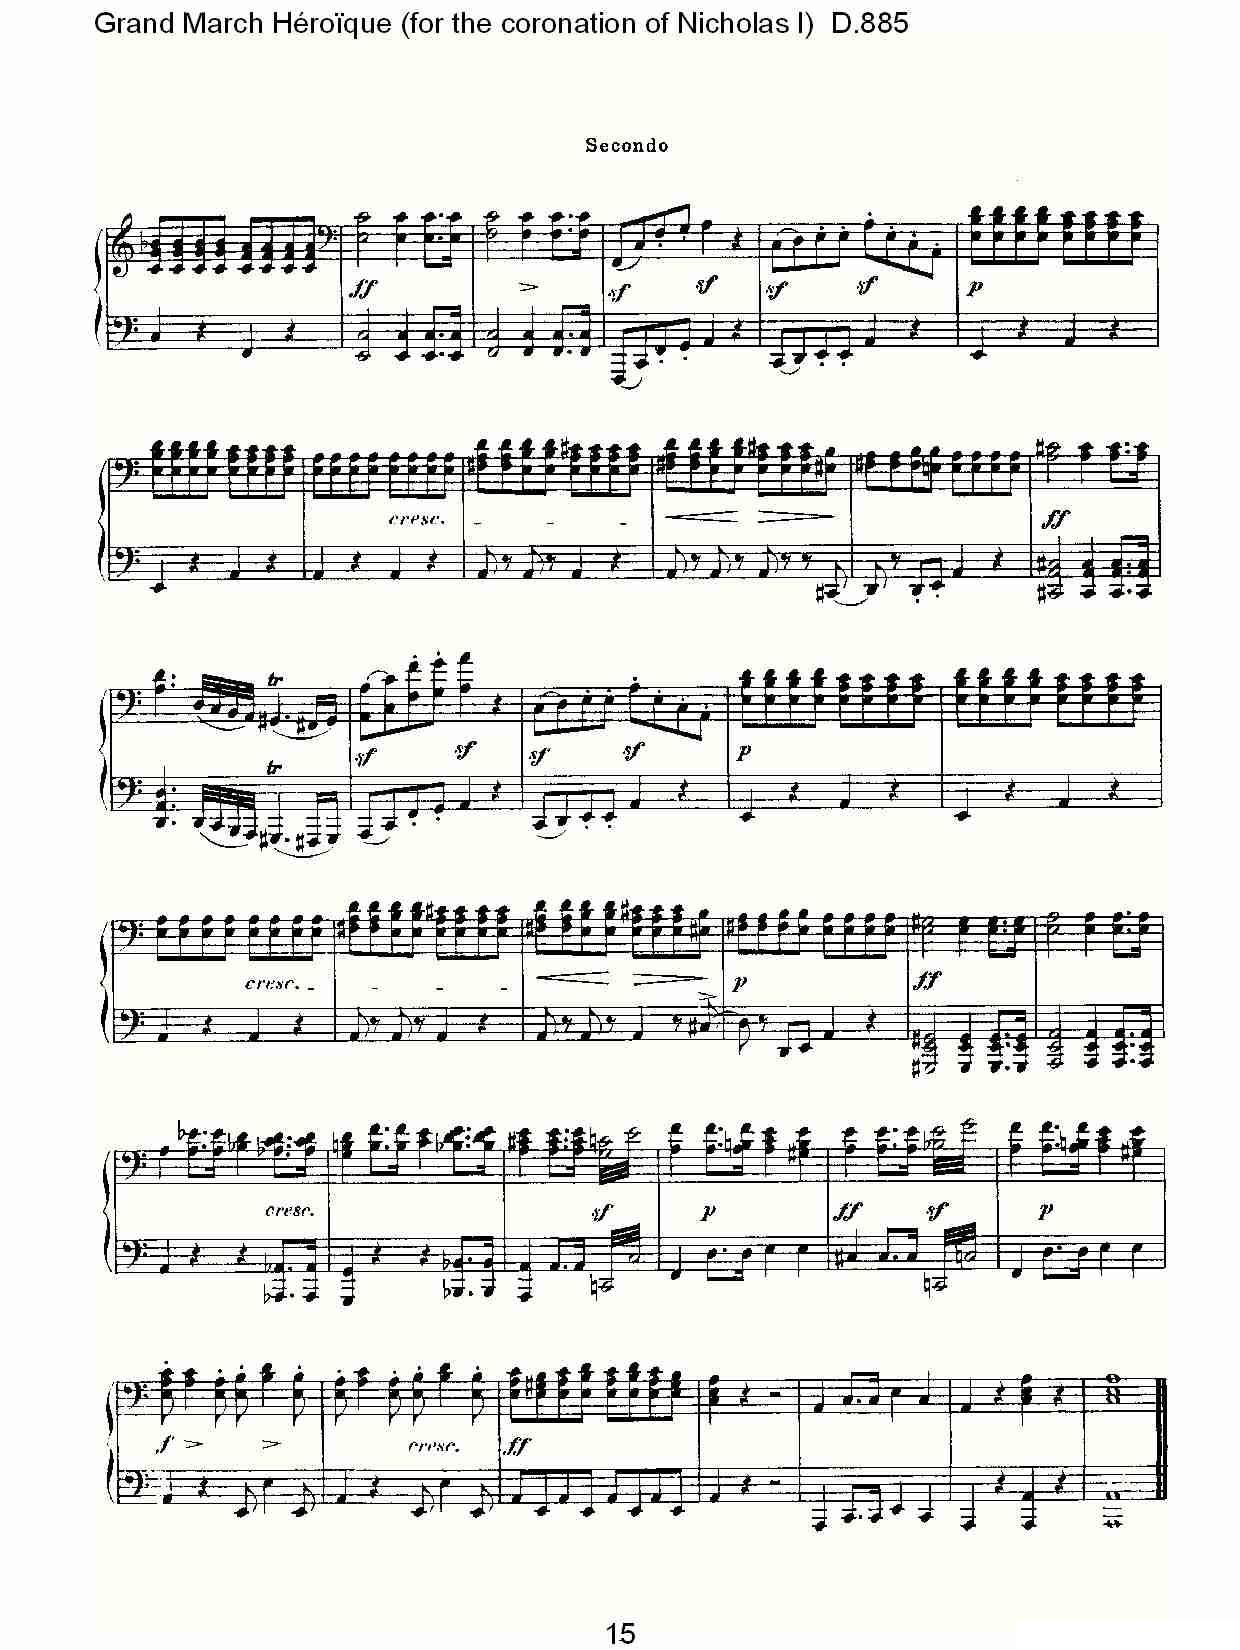 豪华进行曲（为尼古拉斯一世加冕礼而作)D.88）钢琴曲谱（图16）